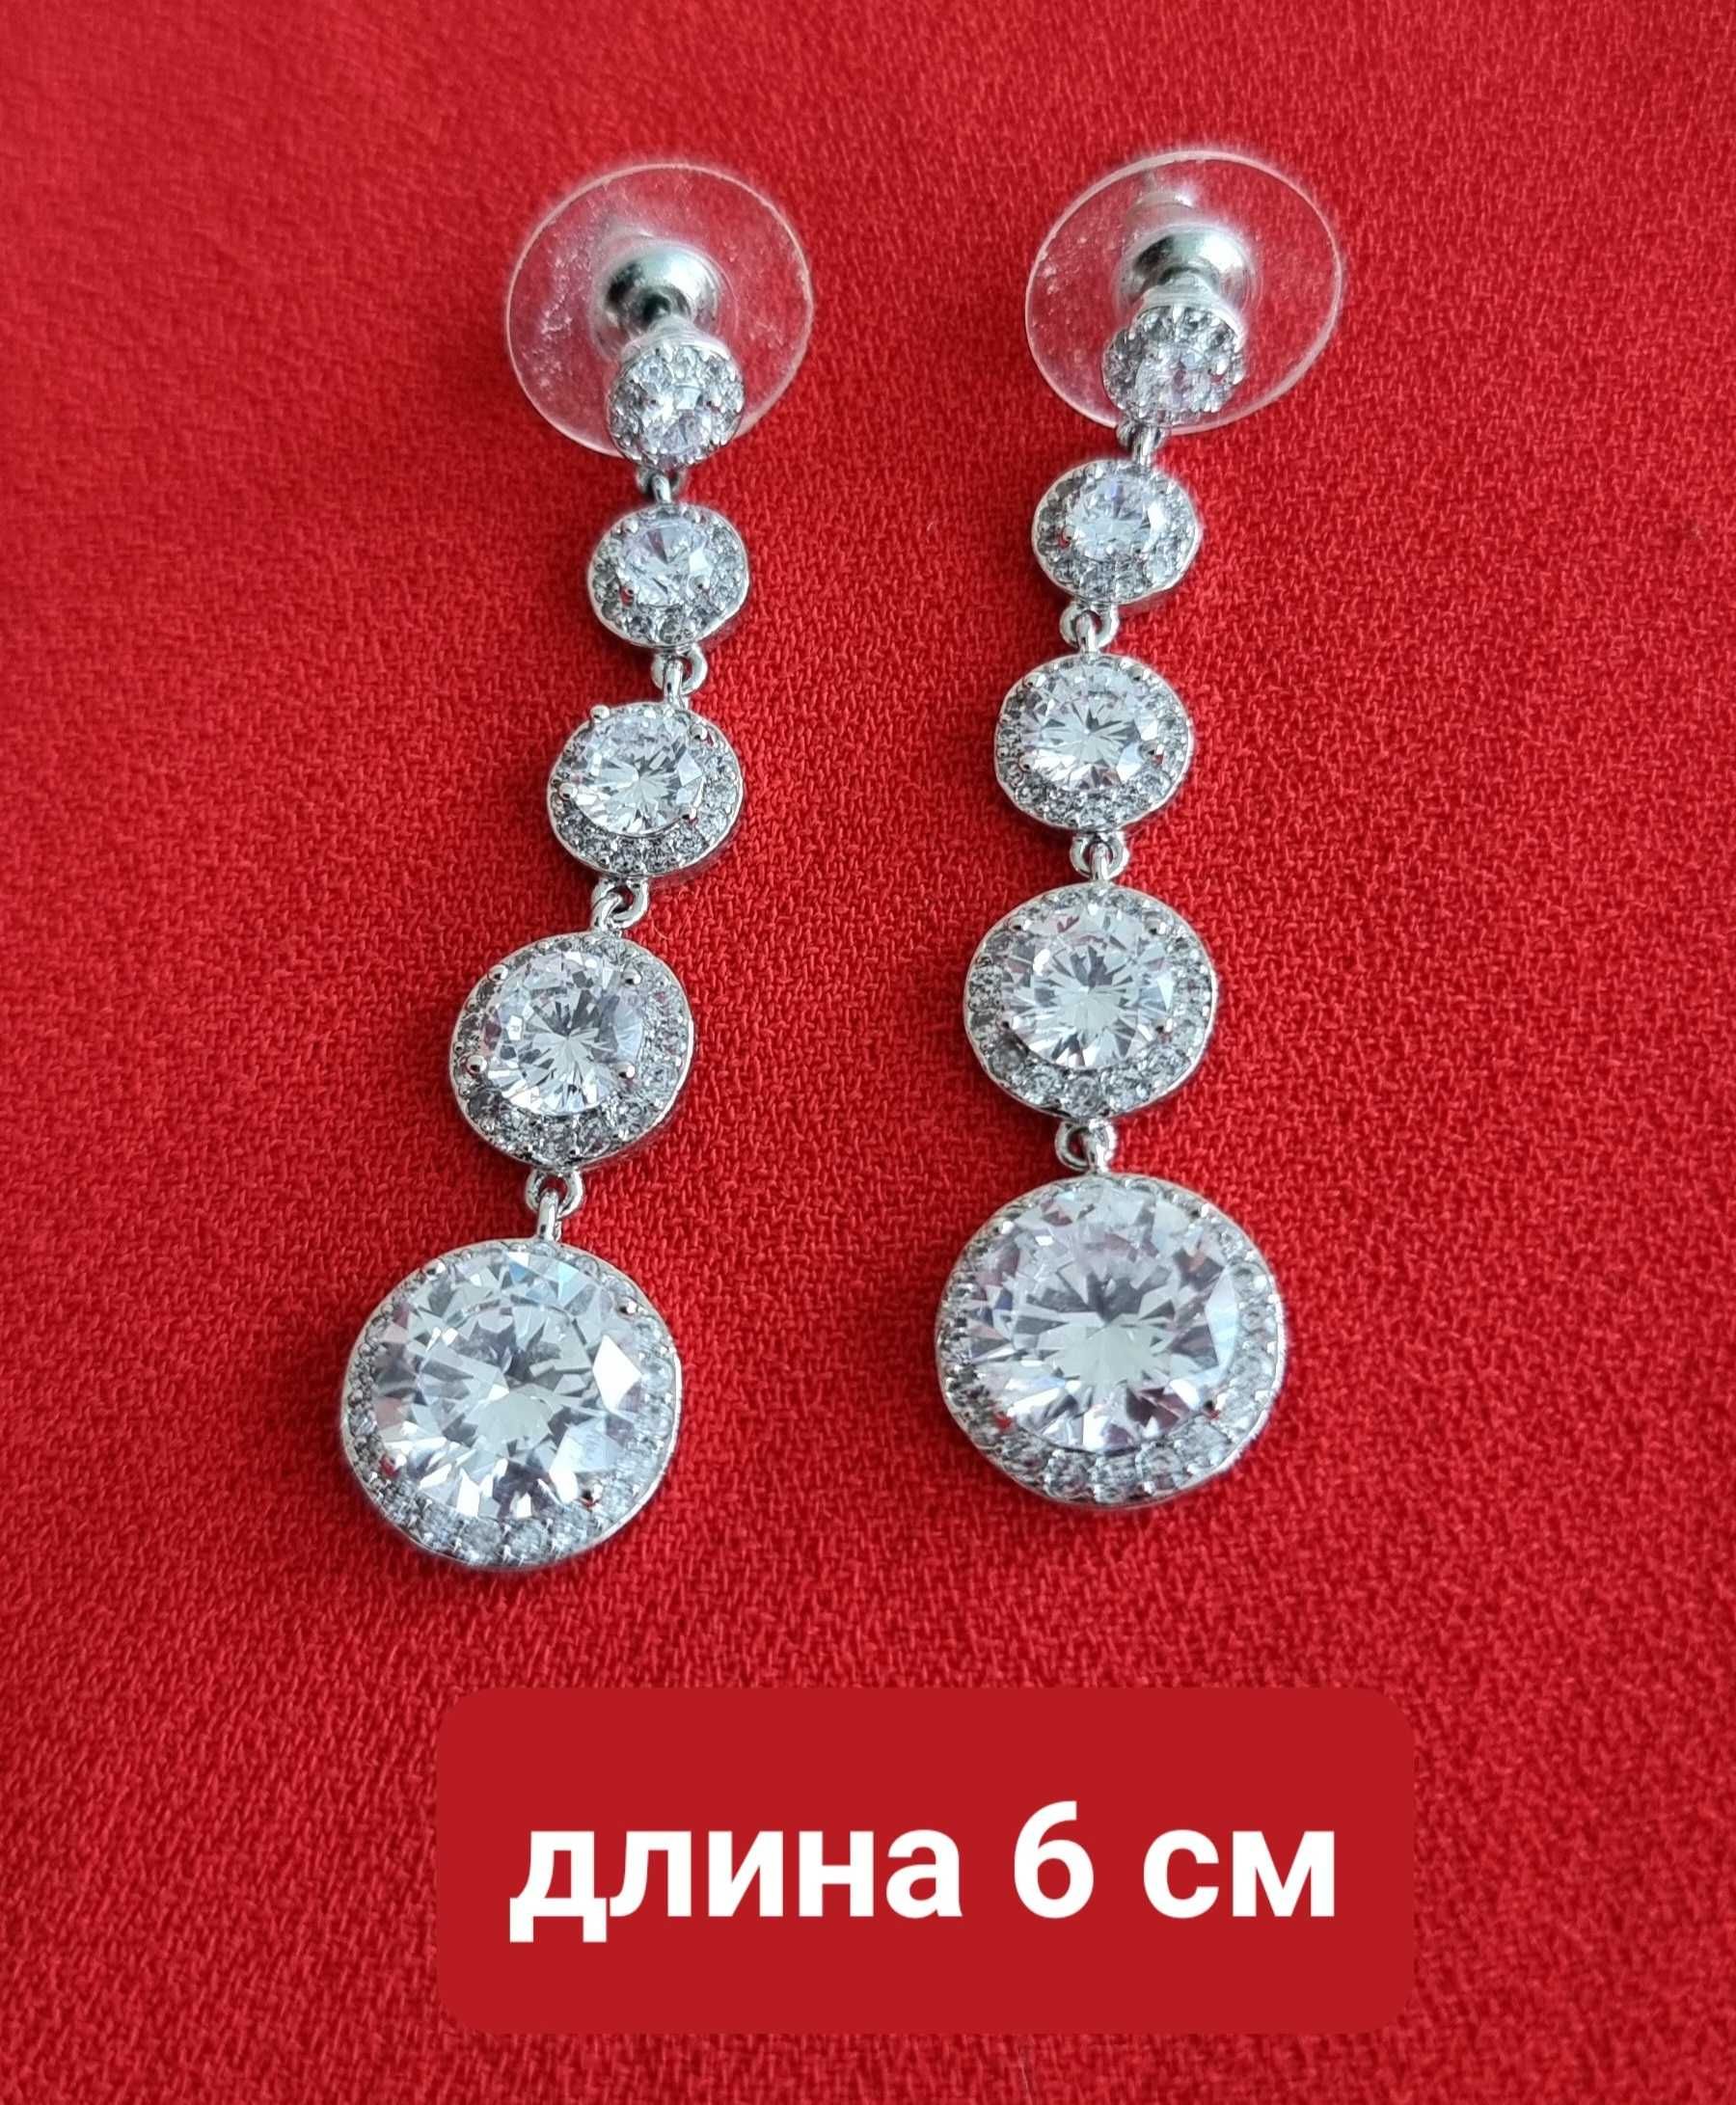 Серьги и кулон с камнями Сваровски в бриллиантовой огранке в идеале